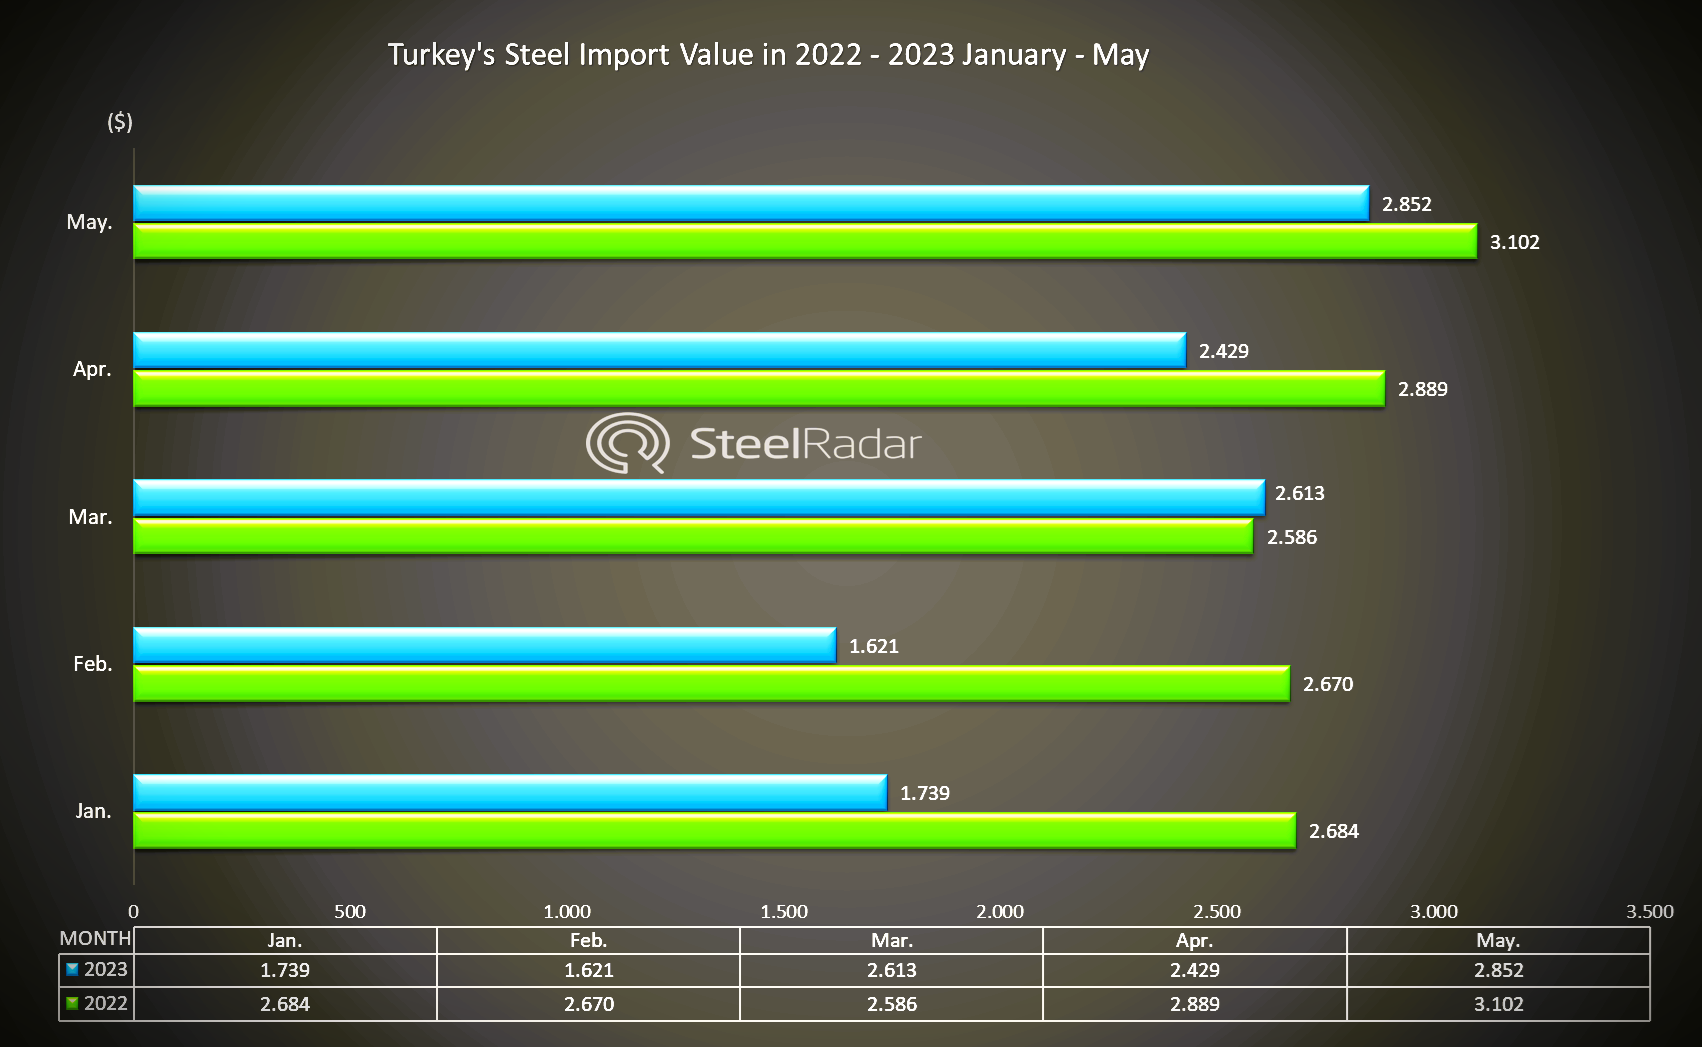 Turkey's steel import value decreased